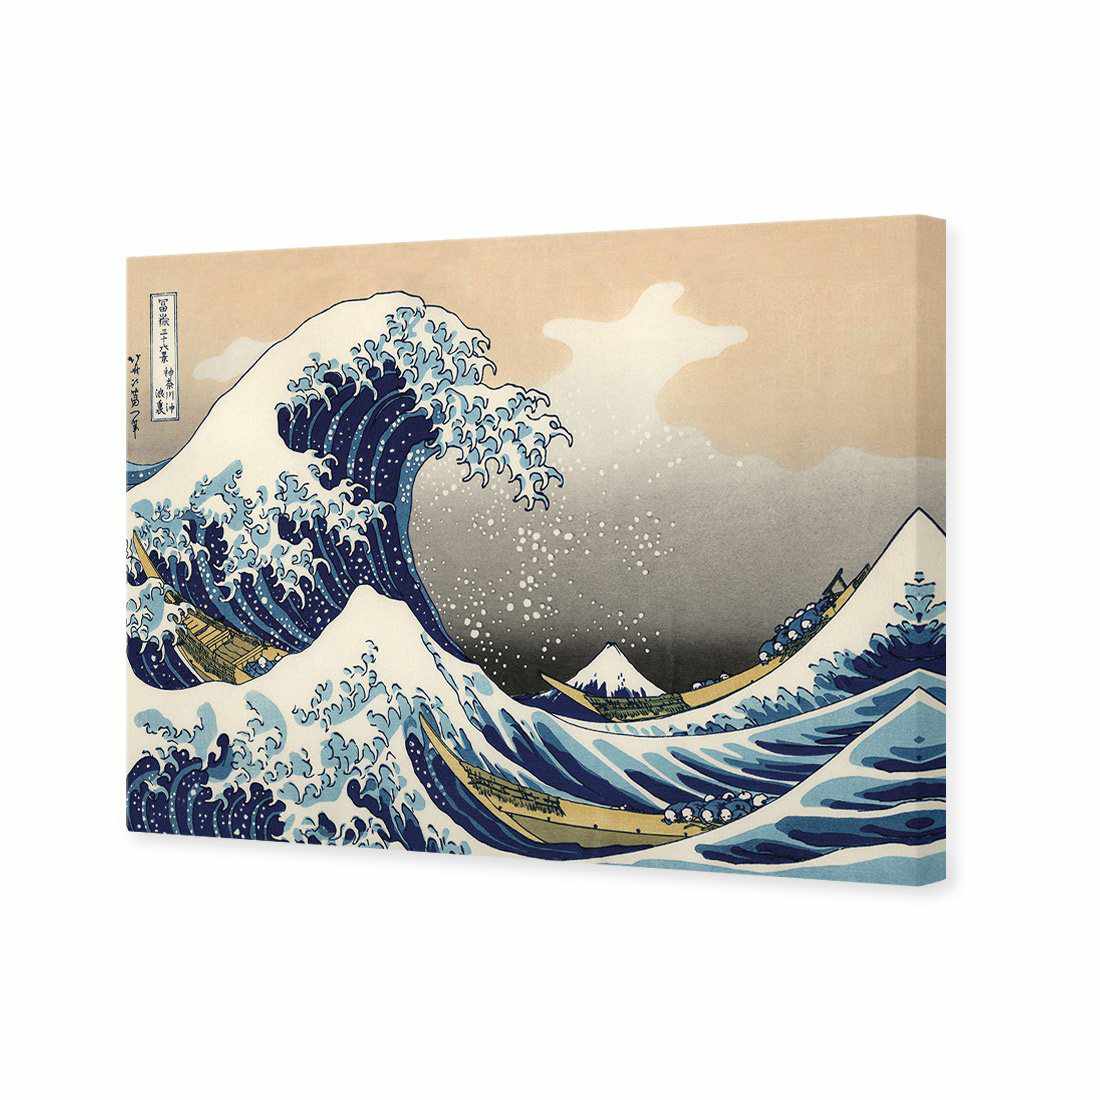 Great Wave Of Kangawa Canvas Art-Canvas-Wall Art Designs-45x30cm-Canvas - No Frame-Wall Art Designs